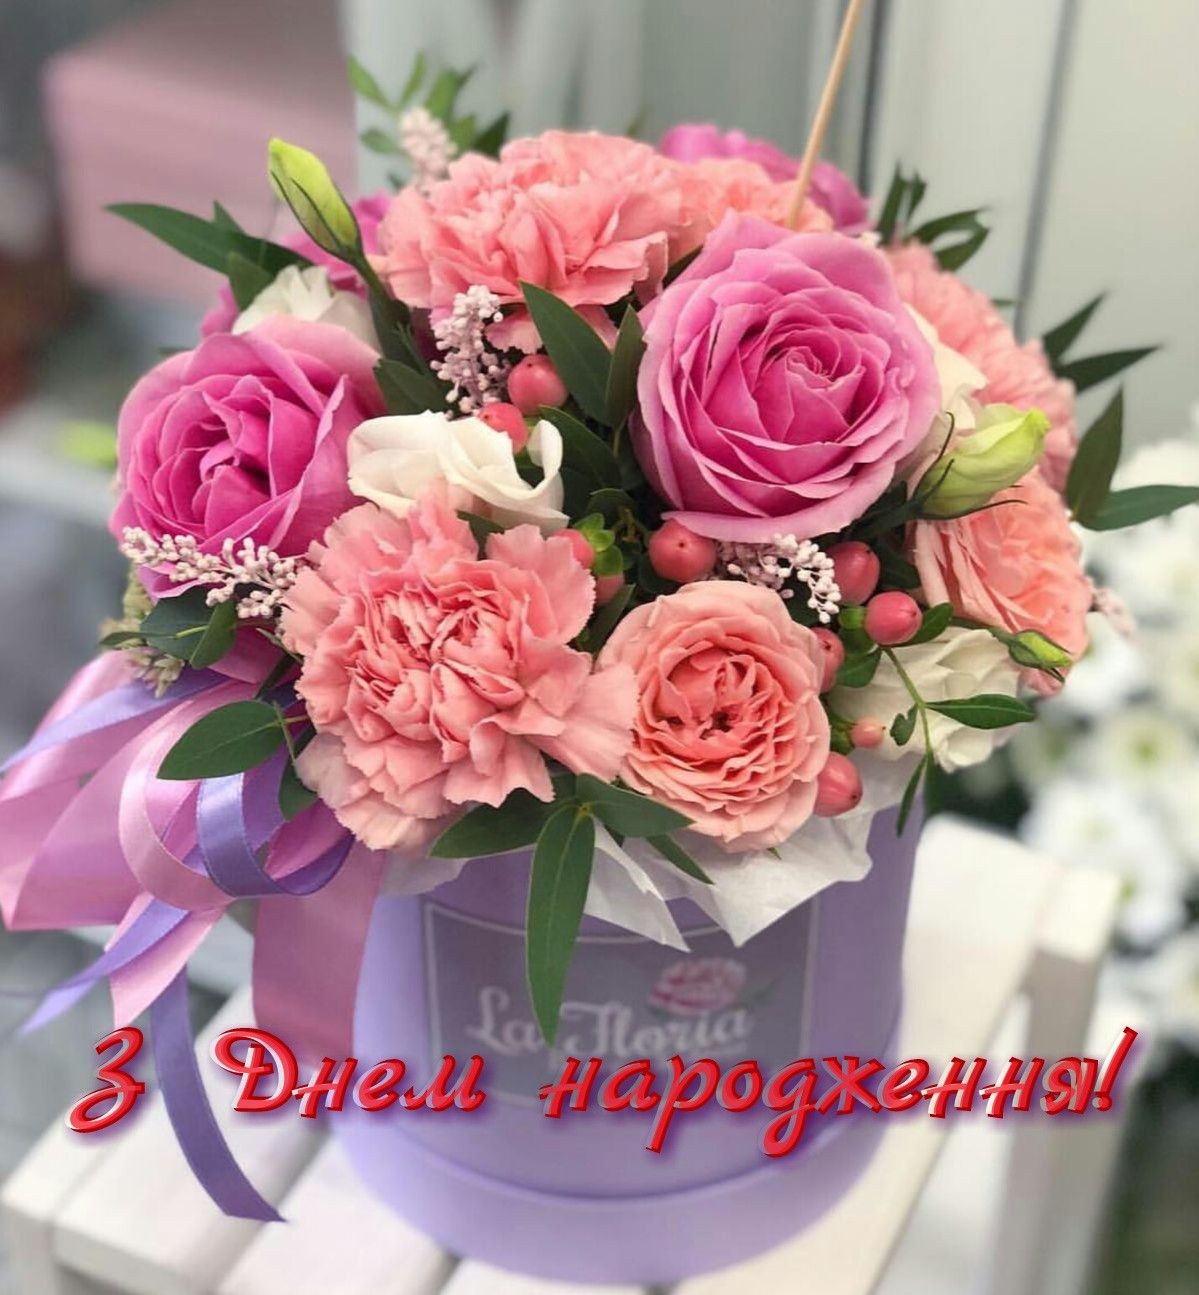 Привітати сваху з днем народження українською мовою
